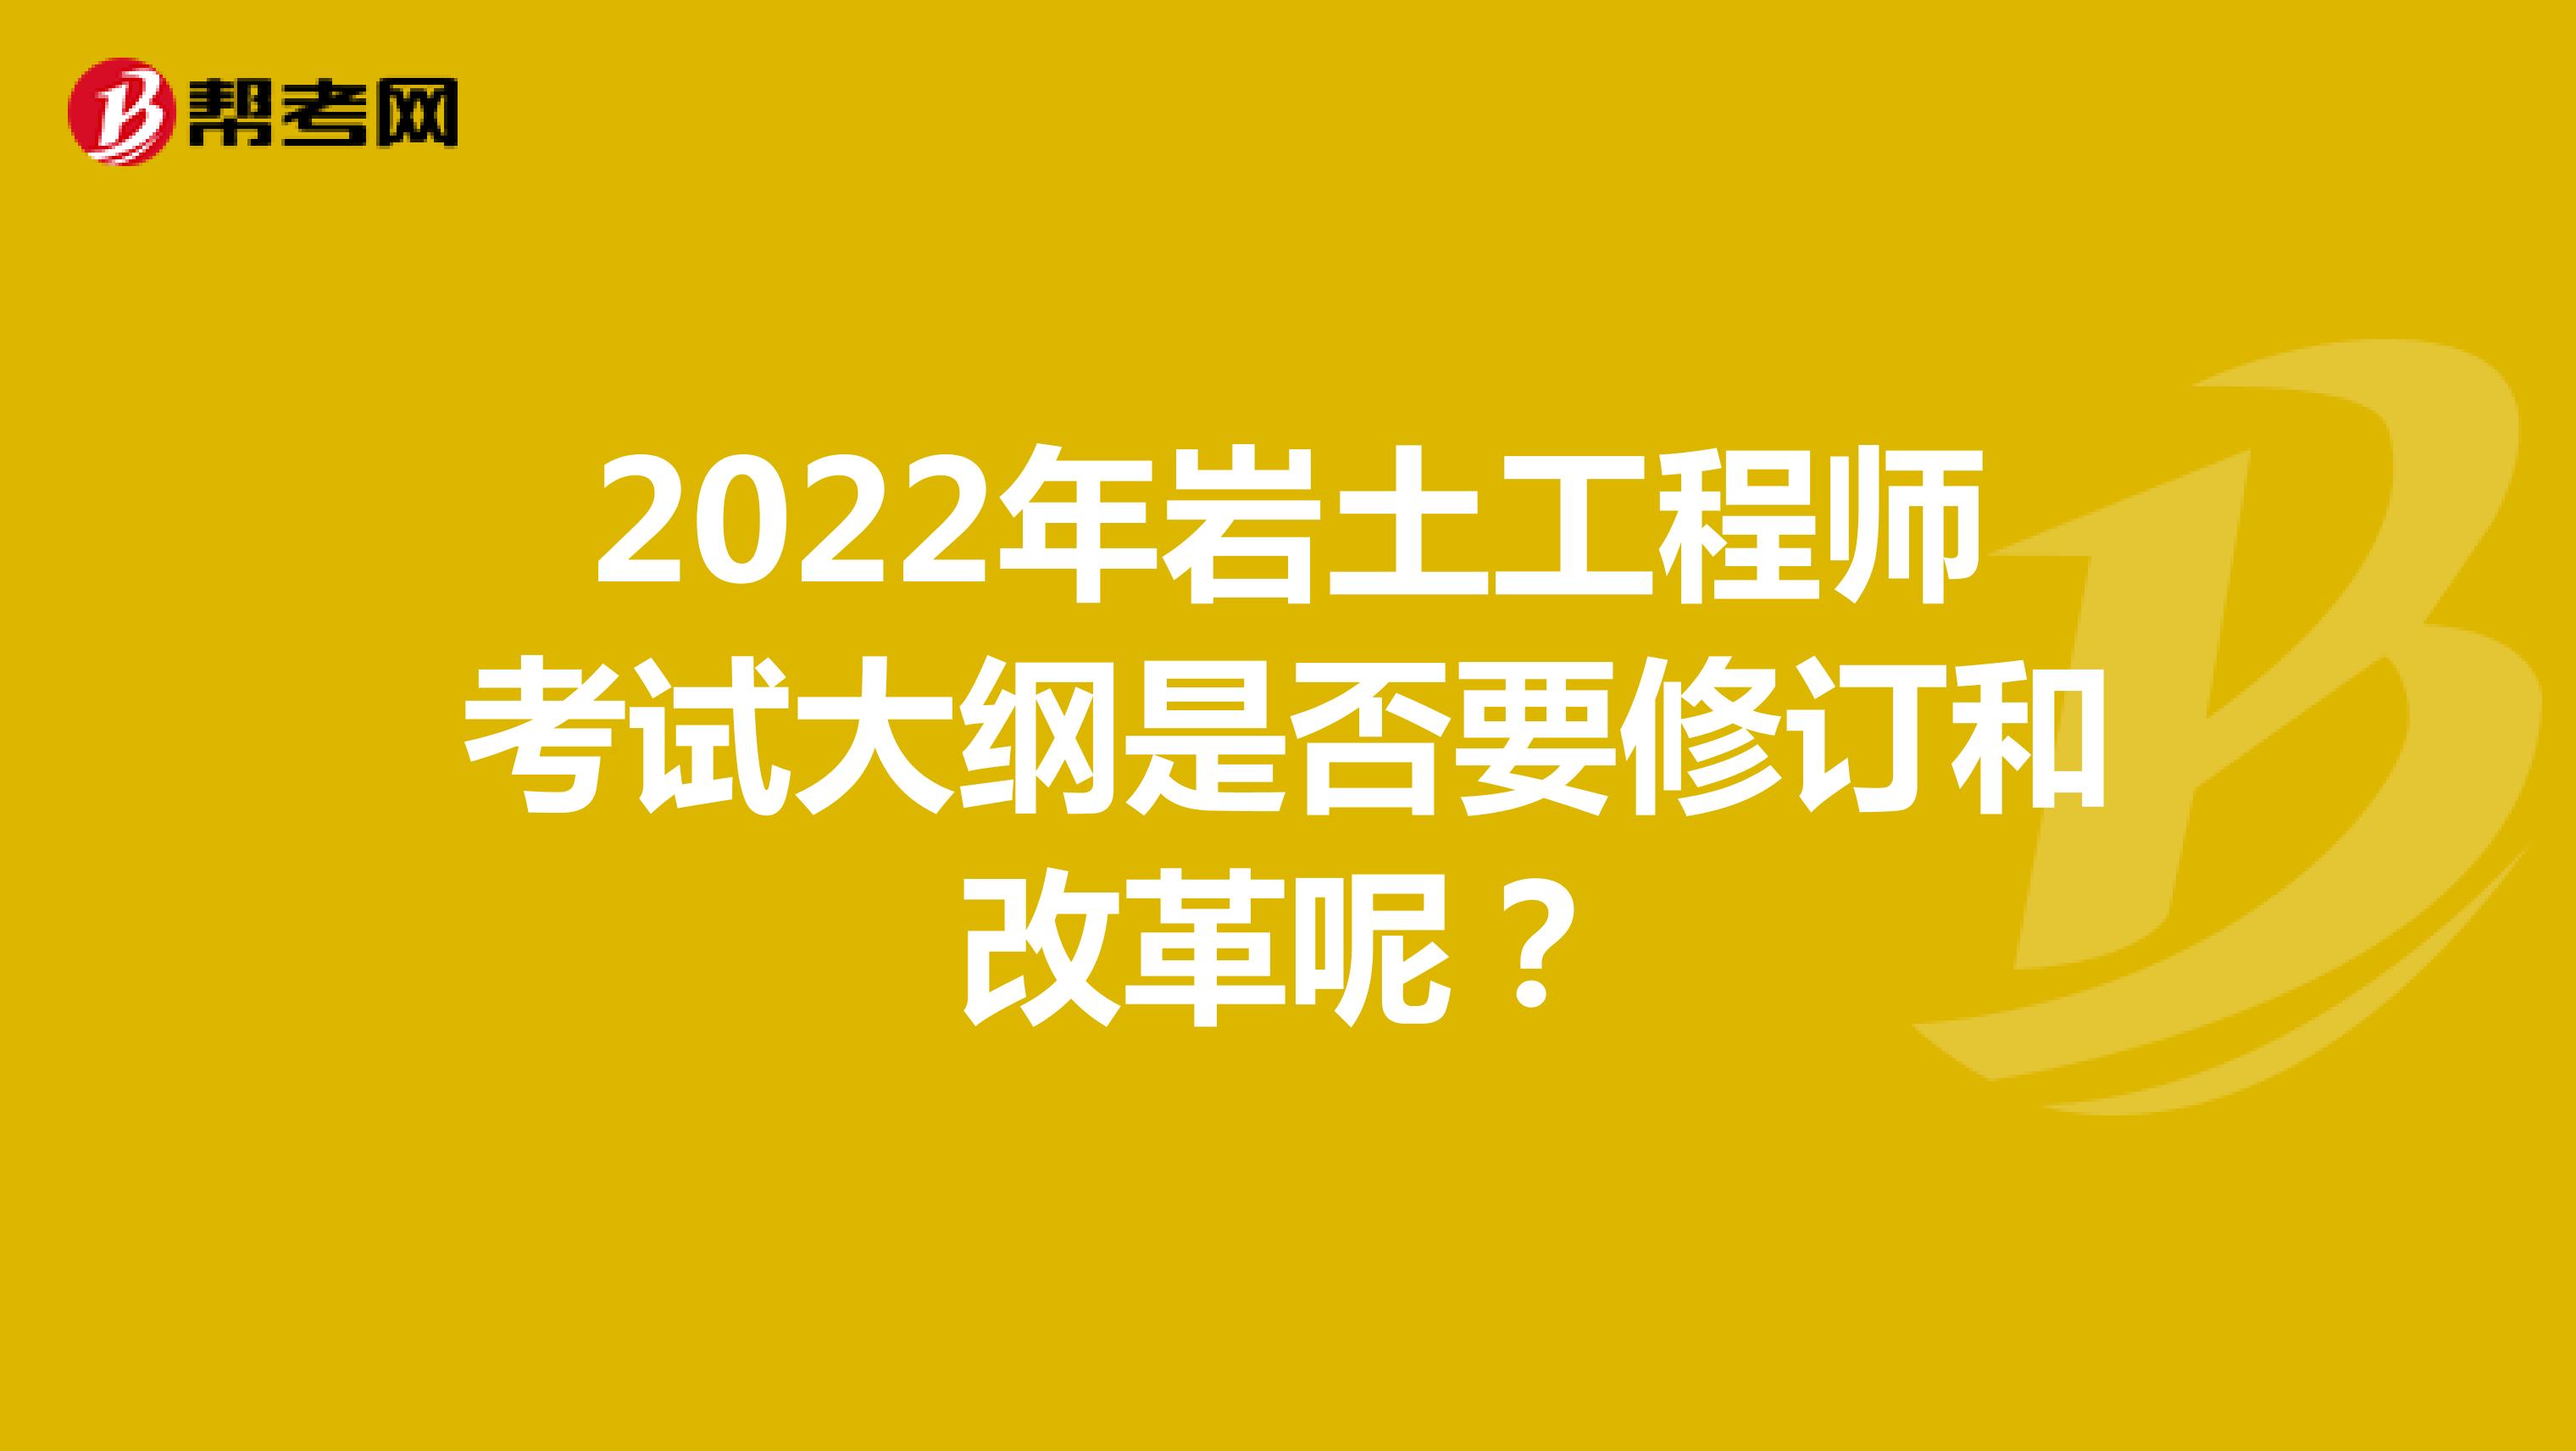 2022年岩土工程师考试大纲是否要修订和改革呢？